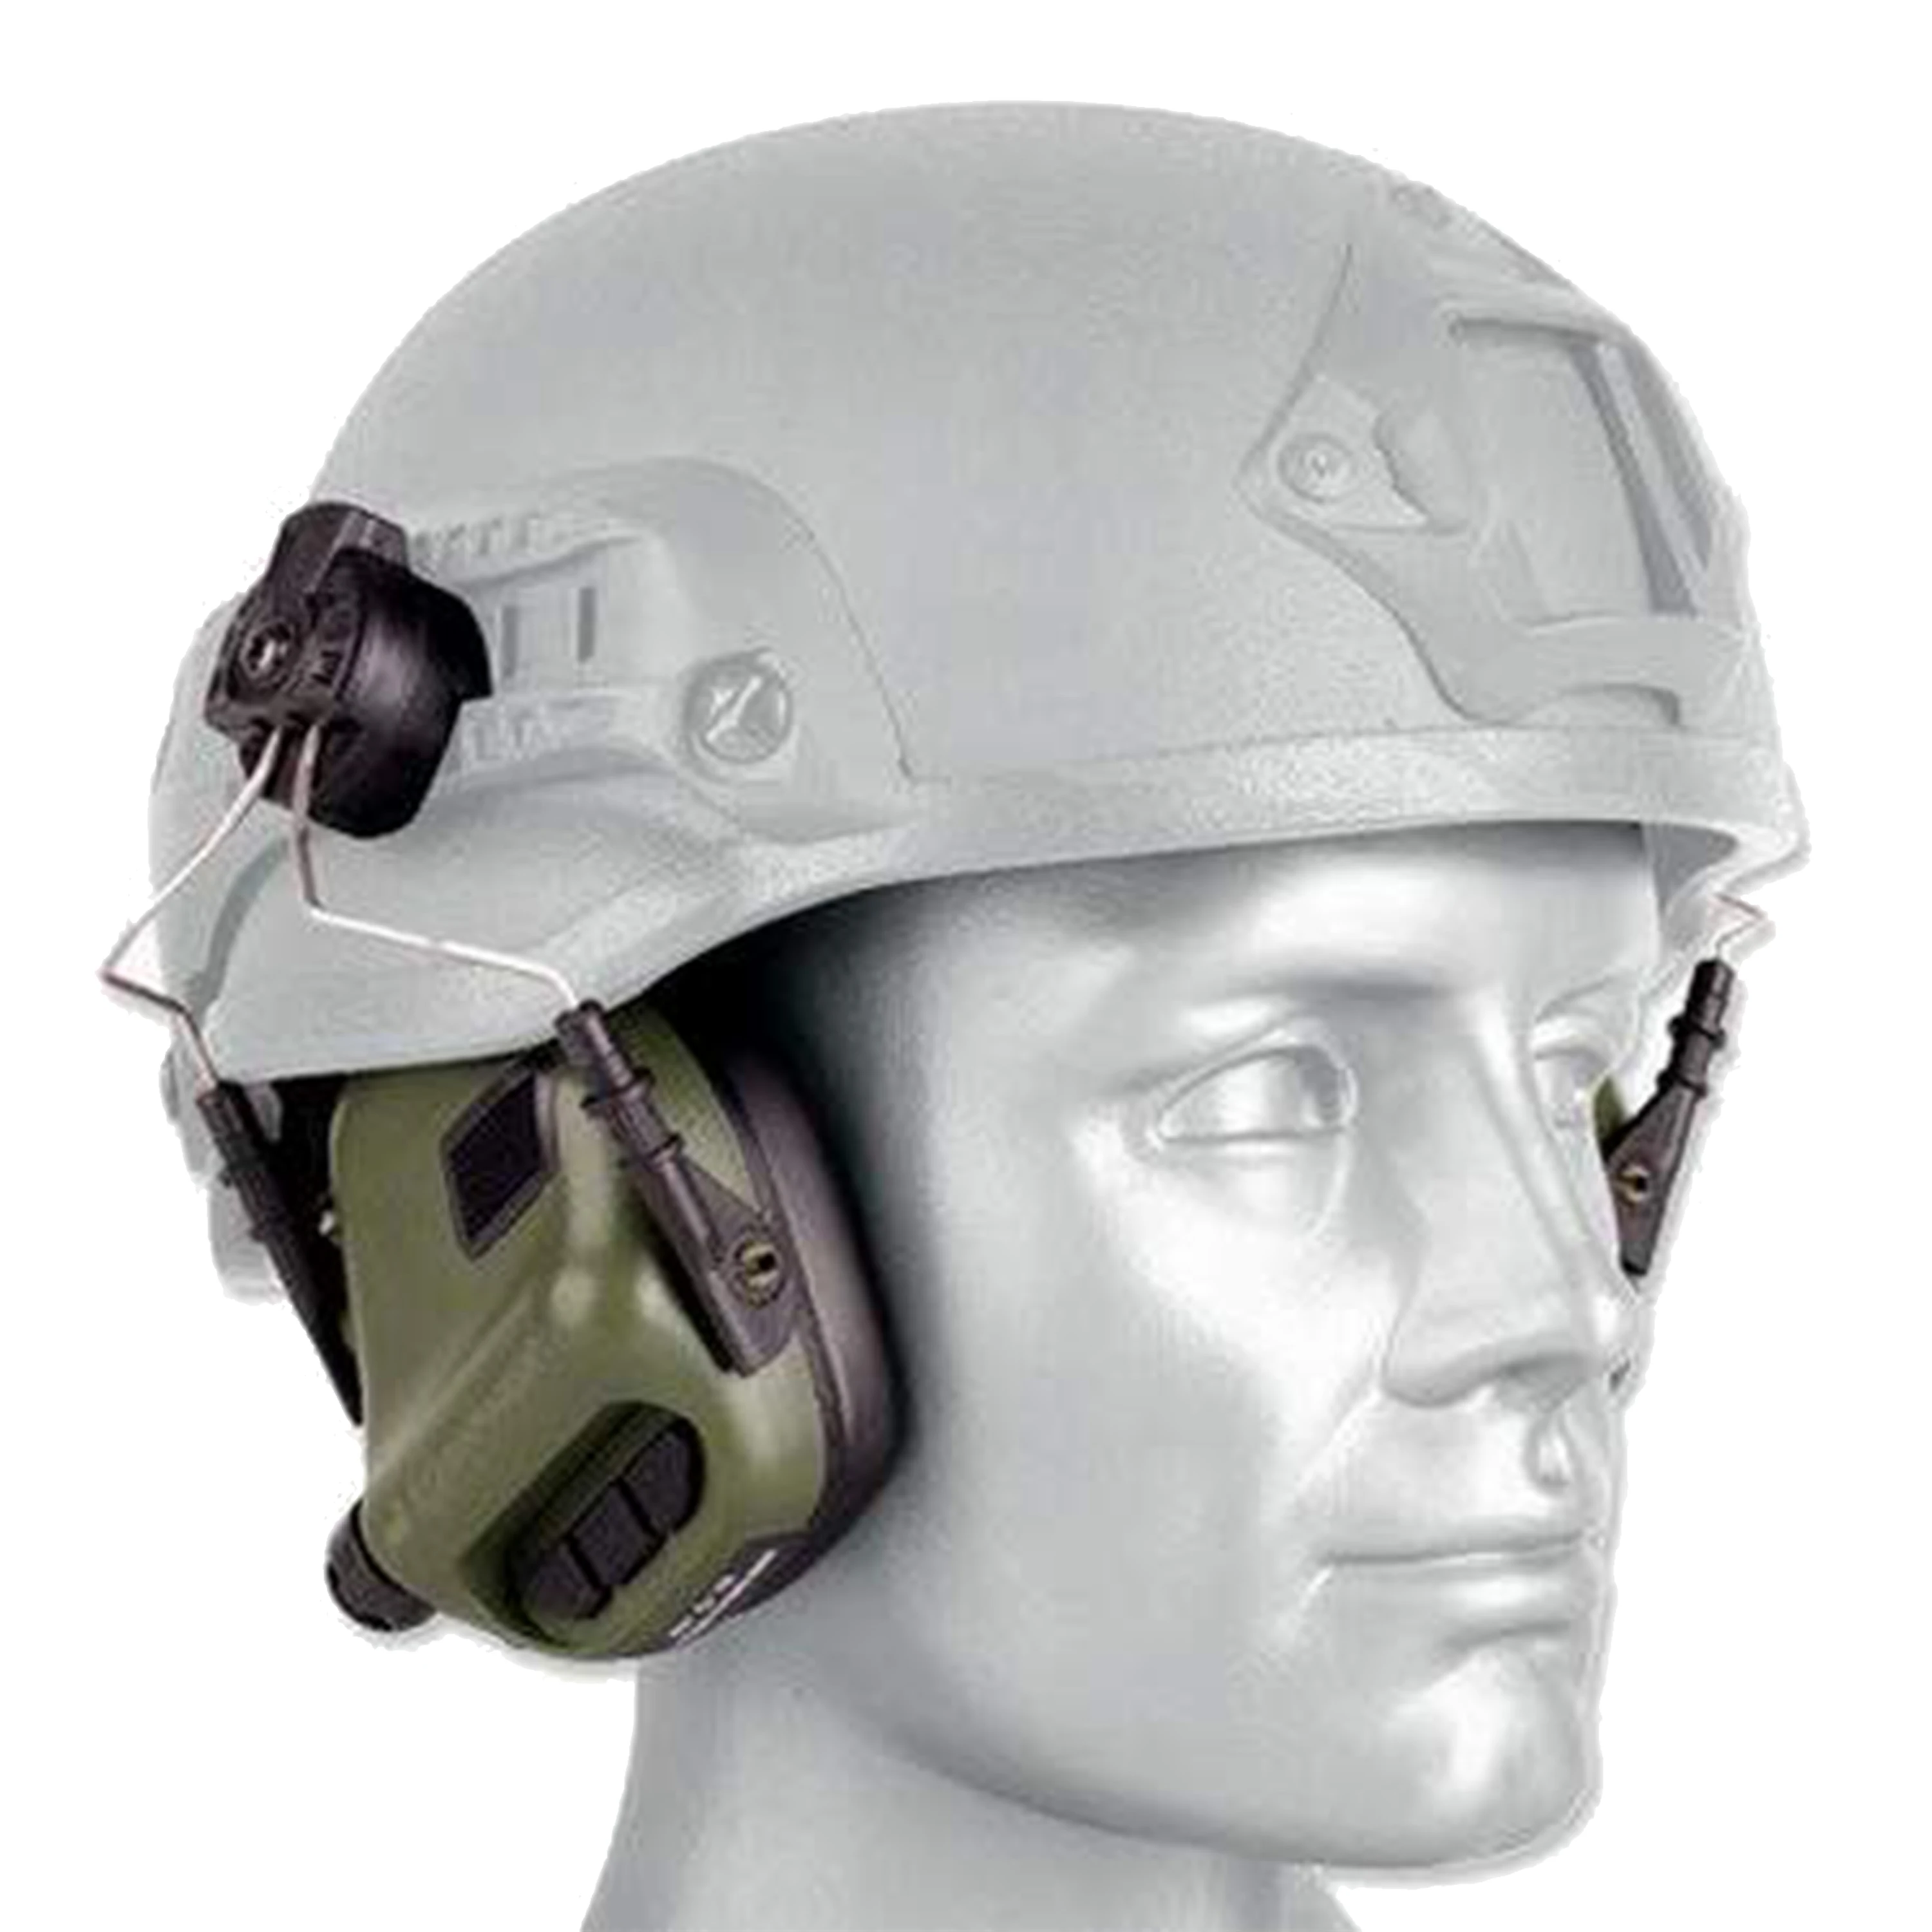 Тактические наушники под шлем. Earmor m31. Активные наушники под шлем Митч 2000. Тактические наушники под шлем Ратник. Активные наушники для шлема с ушами.